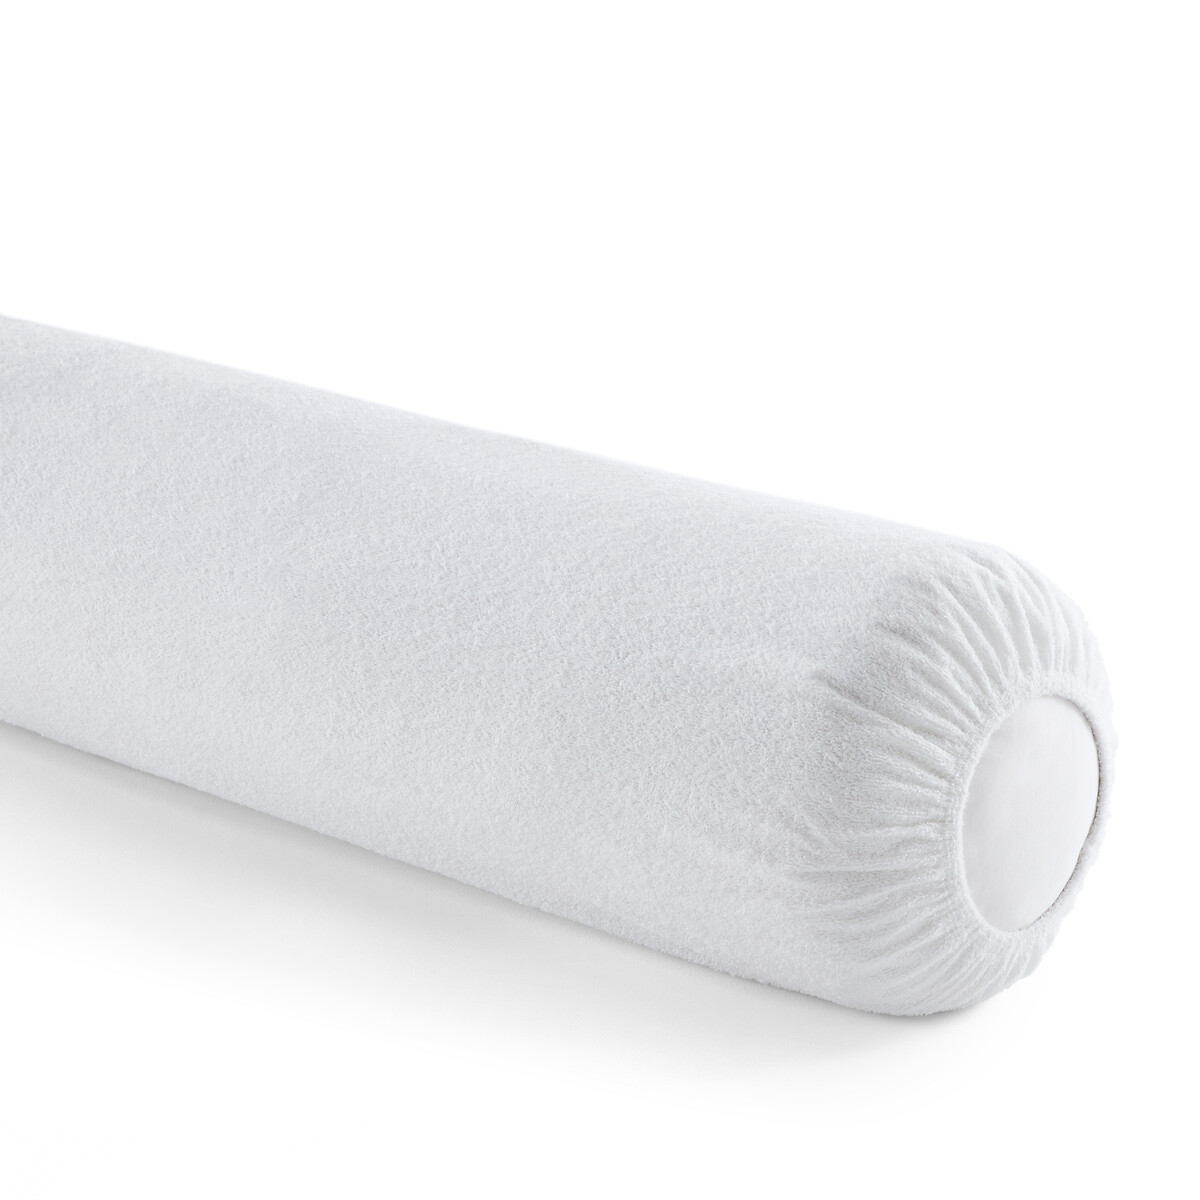 Чехол Защитный на подушку-валик с обработкой против клещей длина: 90 см белый